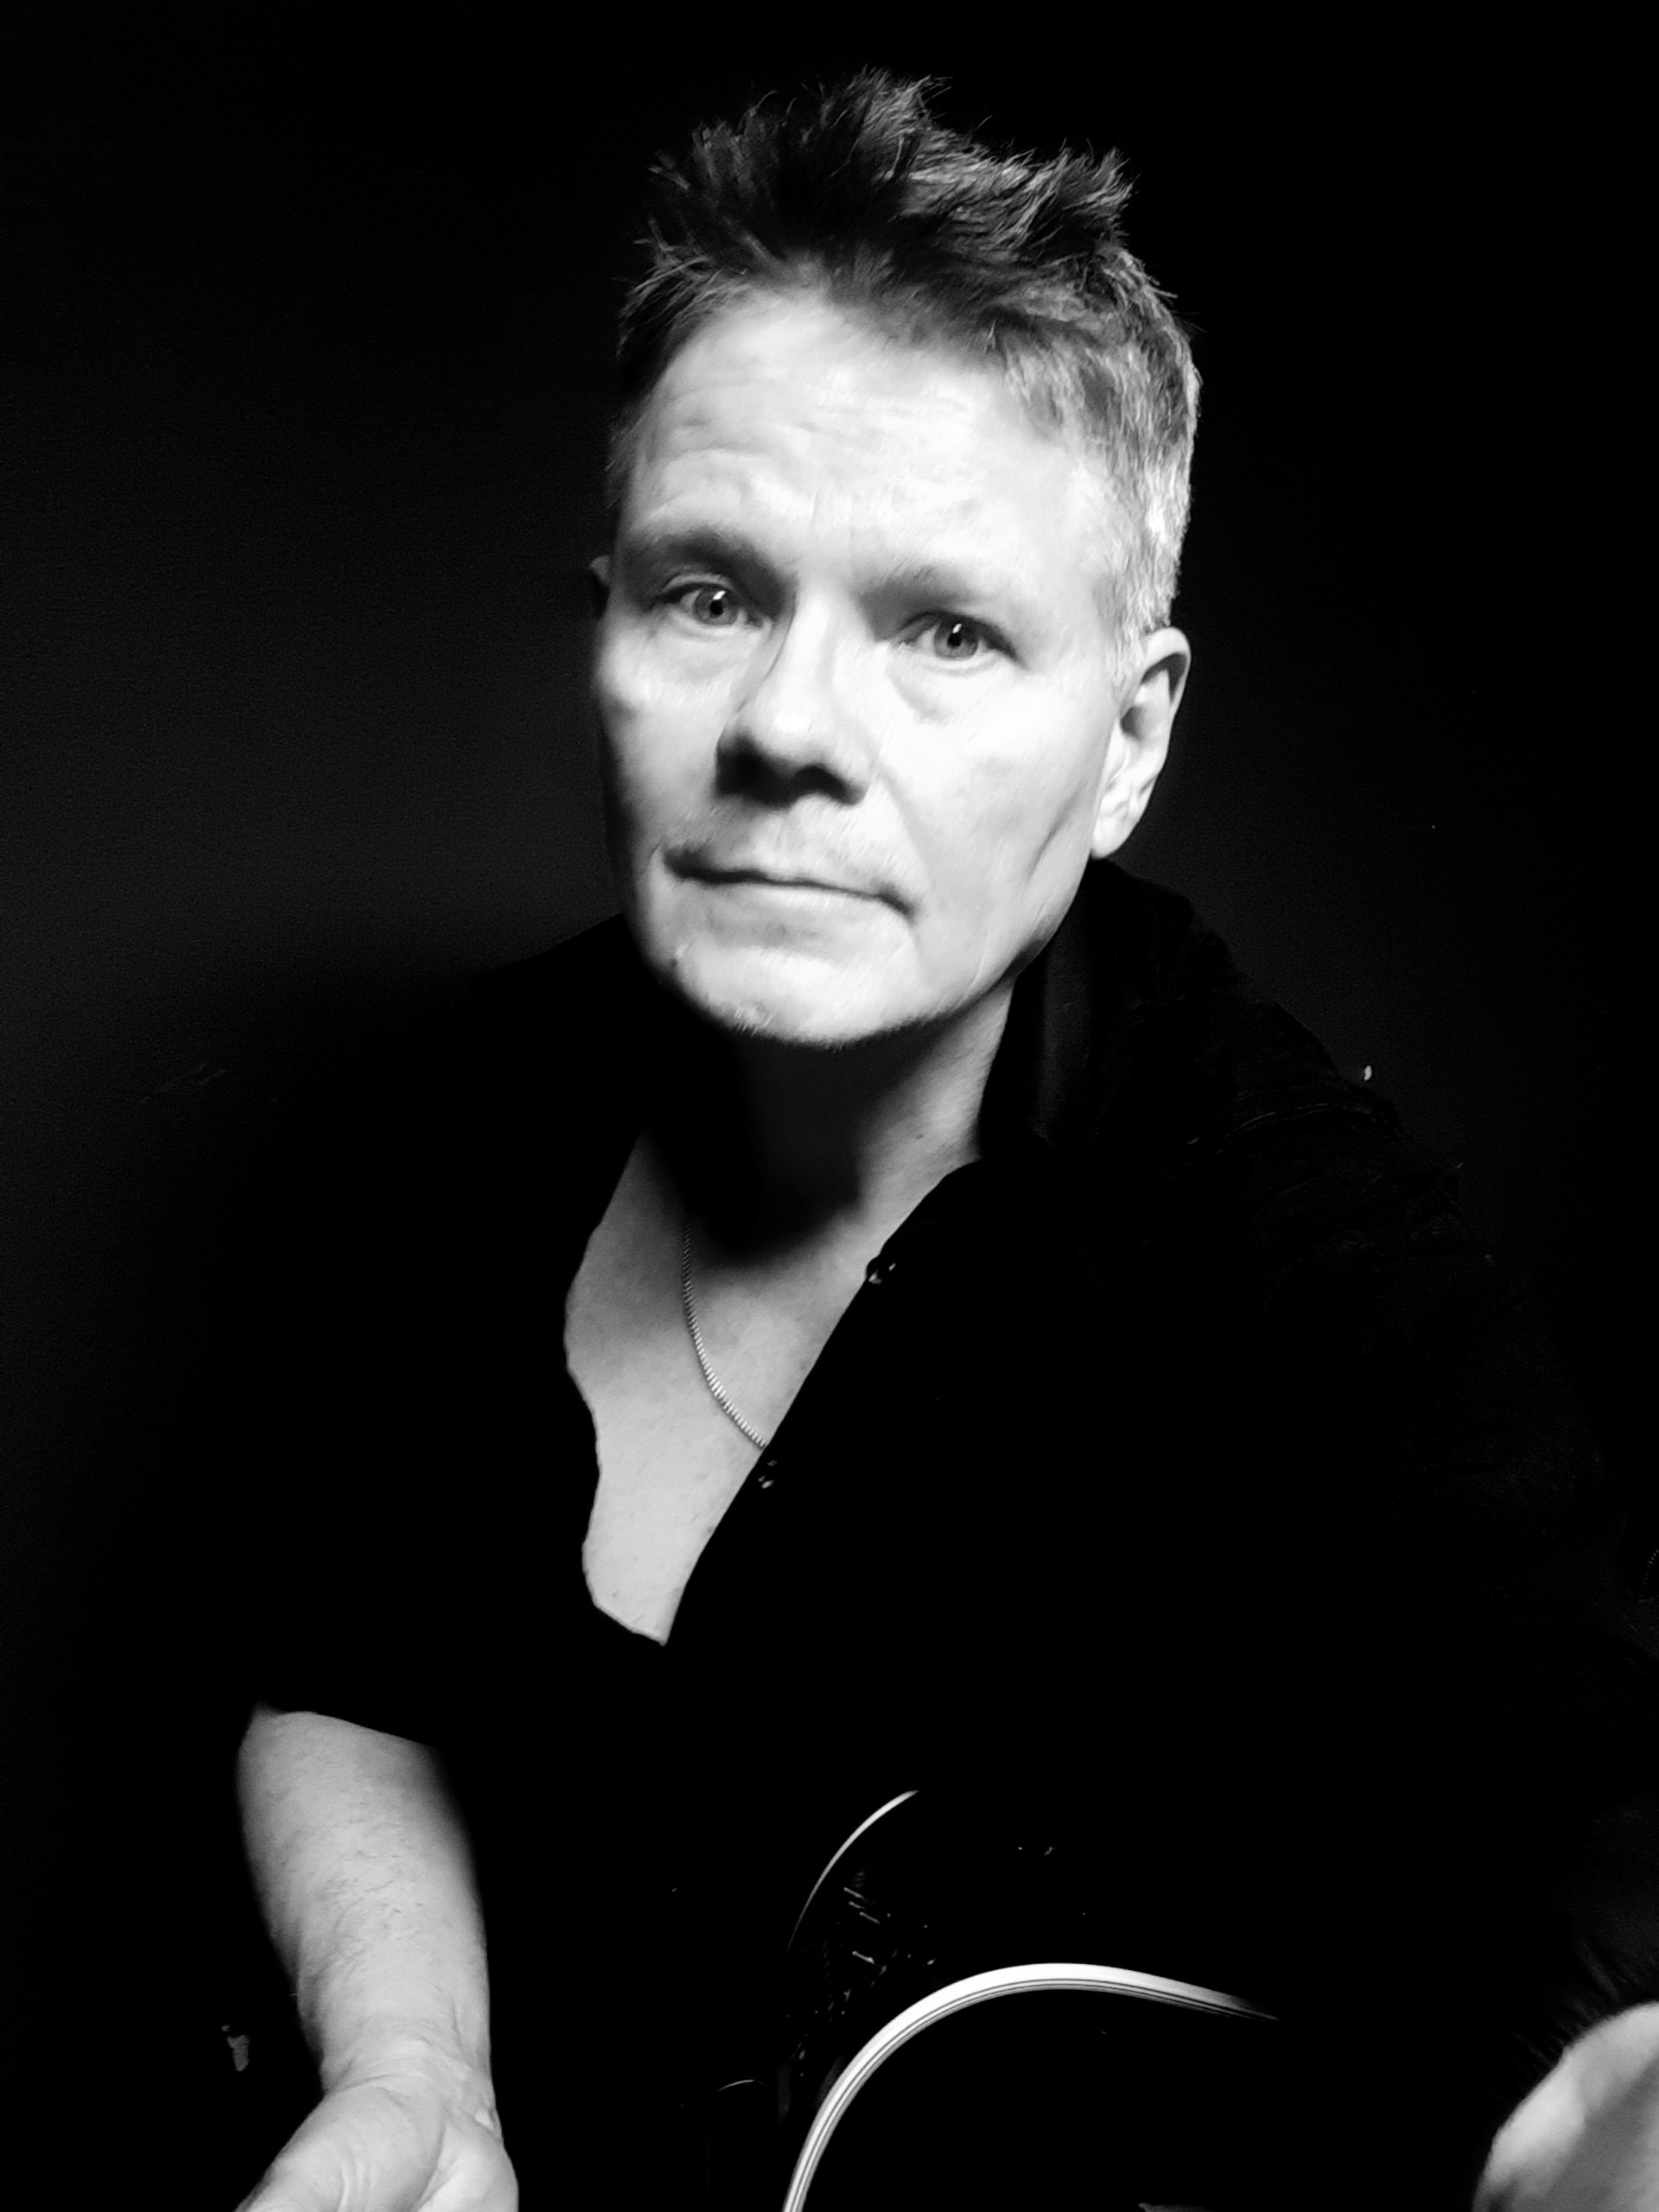 Porträttbild av Hubbe Algovik i svartvitt.